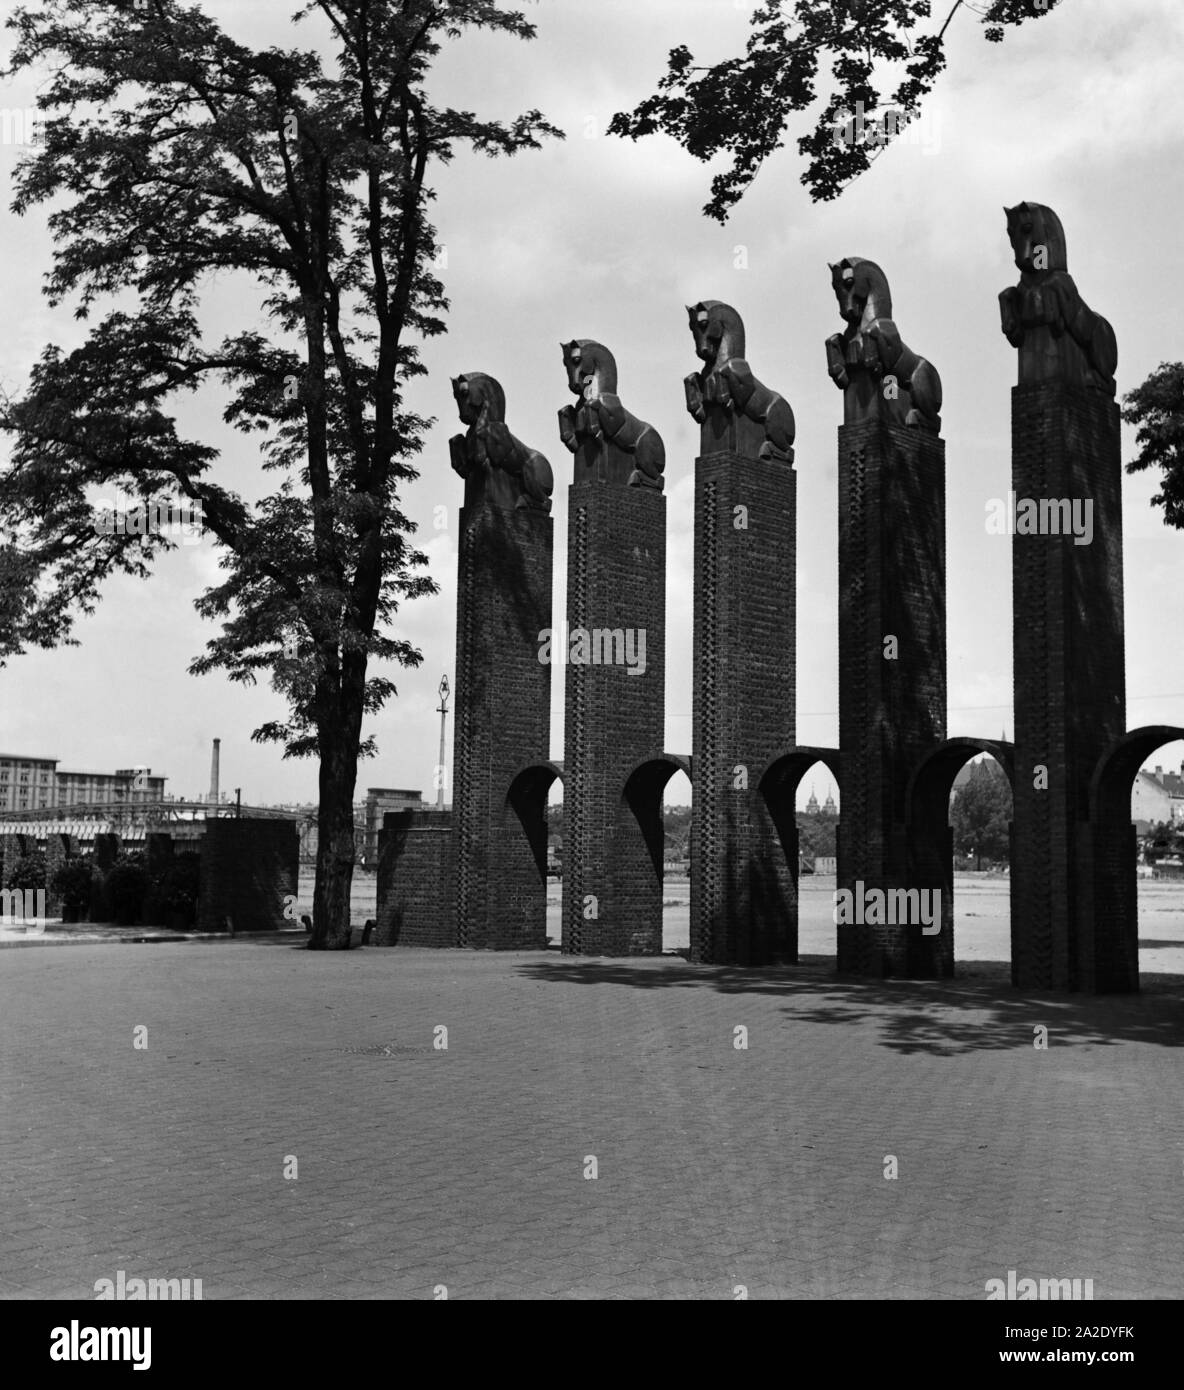 Pferdepfeiler bei der Ausstellungshalle in Magdeburg, Deutschland 1930er Jahre. Pillars with horse sculptures near the Magdeburg exhibition hall, Germany 1930s. Stock Photo